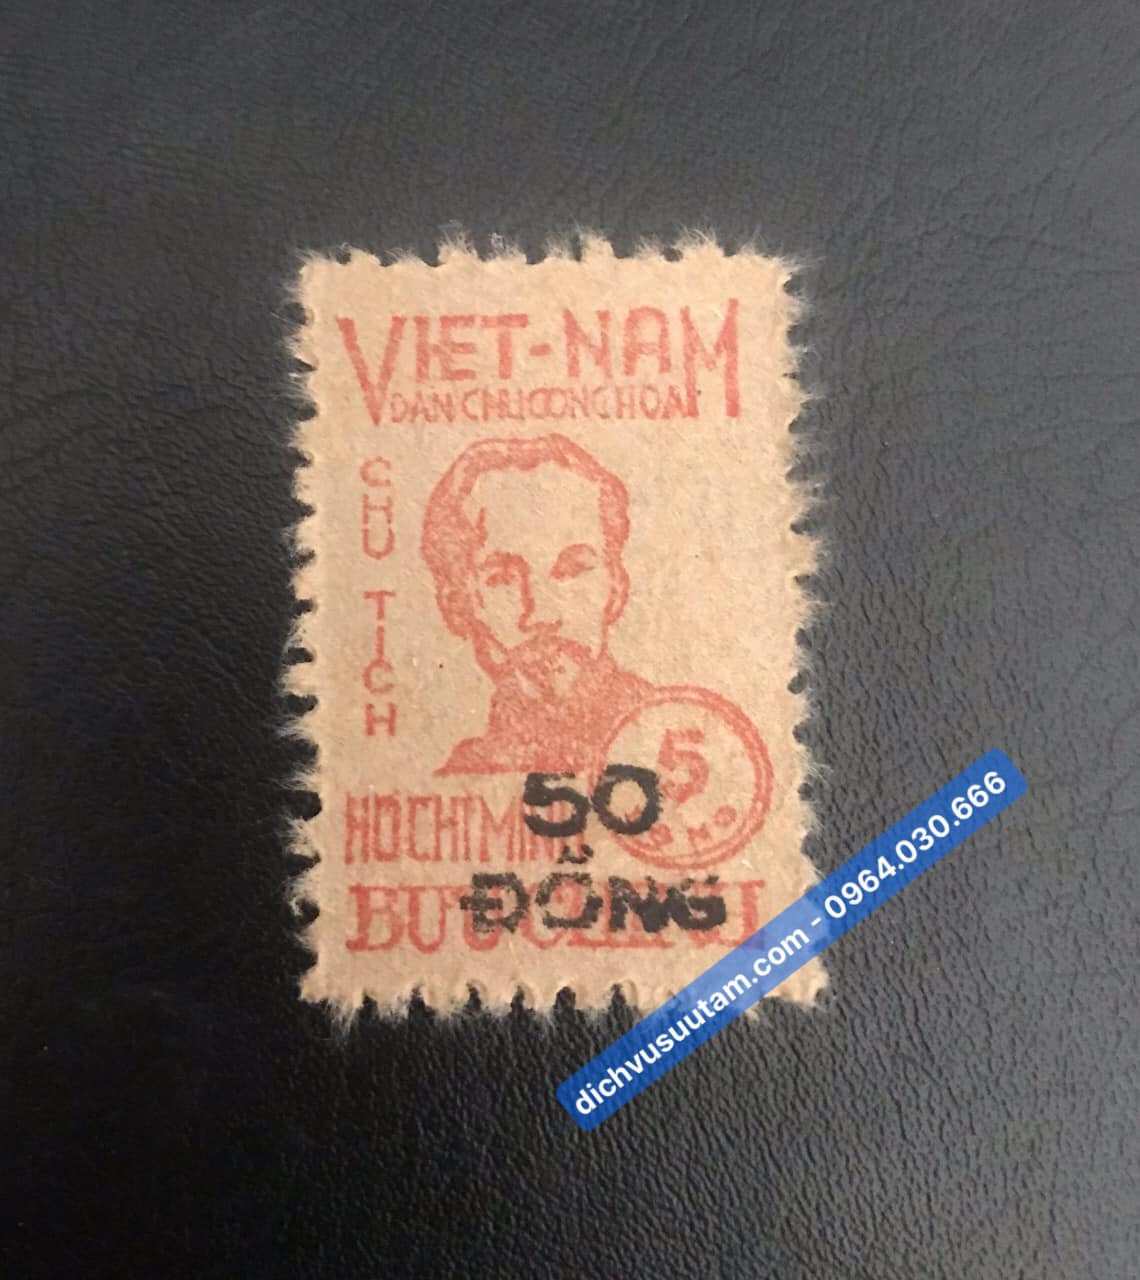 Tem bưu chính Việt Nam 50 đồng in đè hình ảnh bác Hồ, con tem đầu tiên của VNDCCH